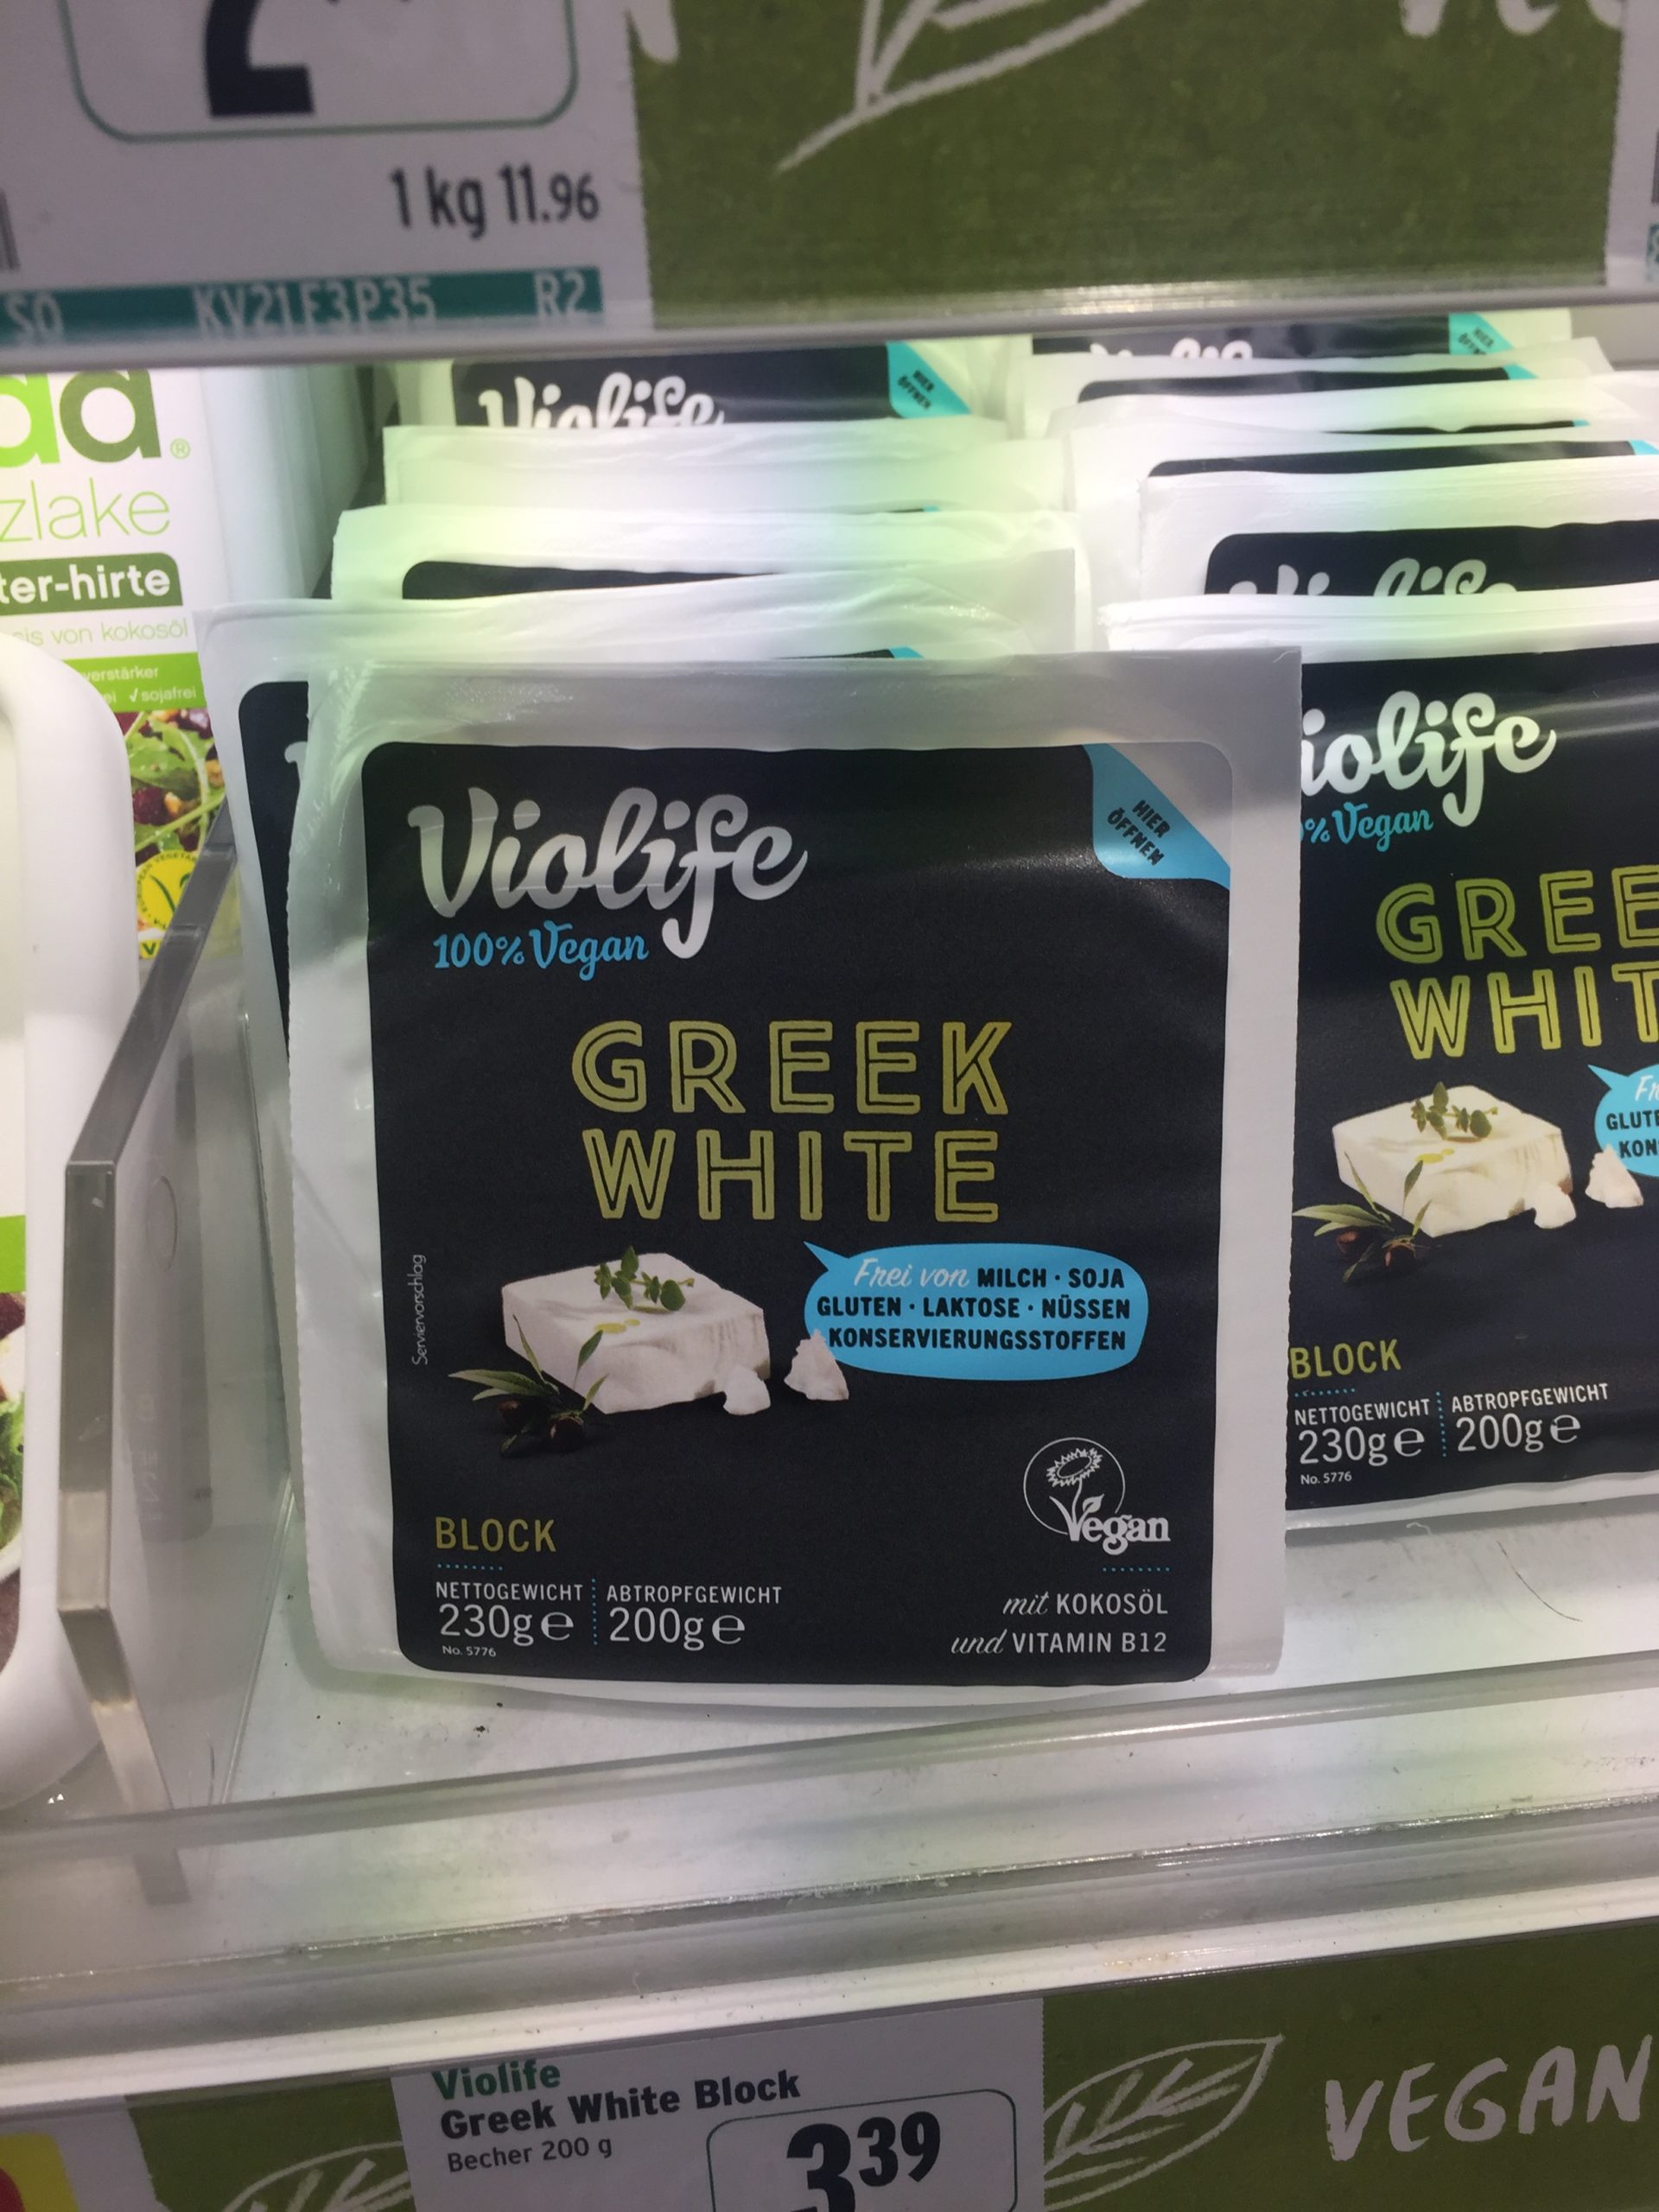 Foto des Produkts “Greek White” in einem Supermarktregal.